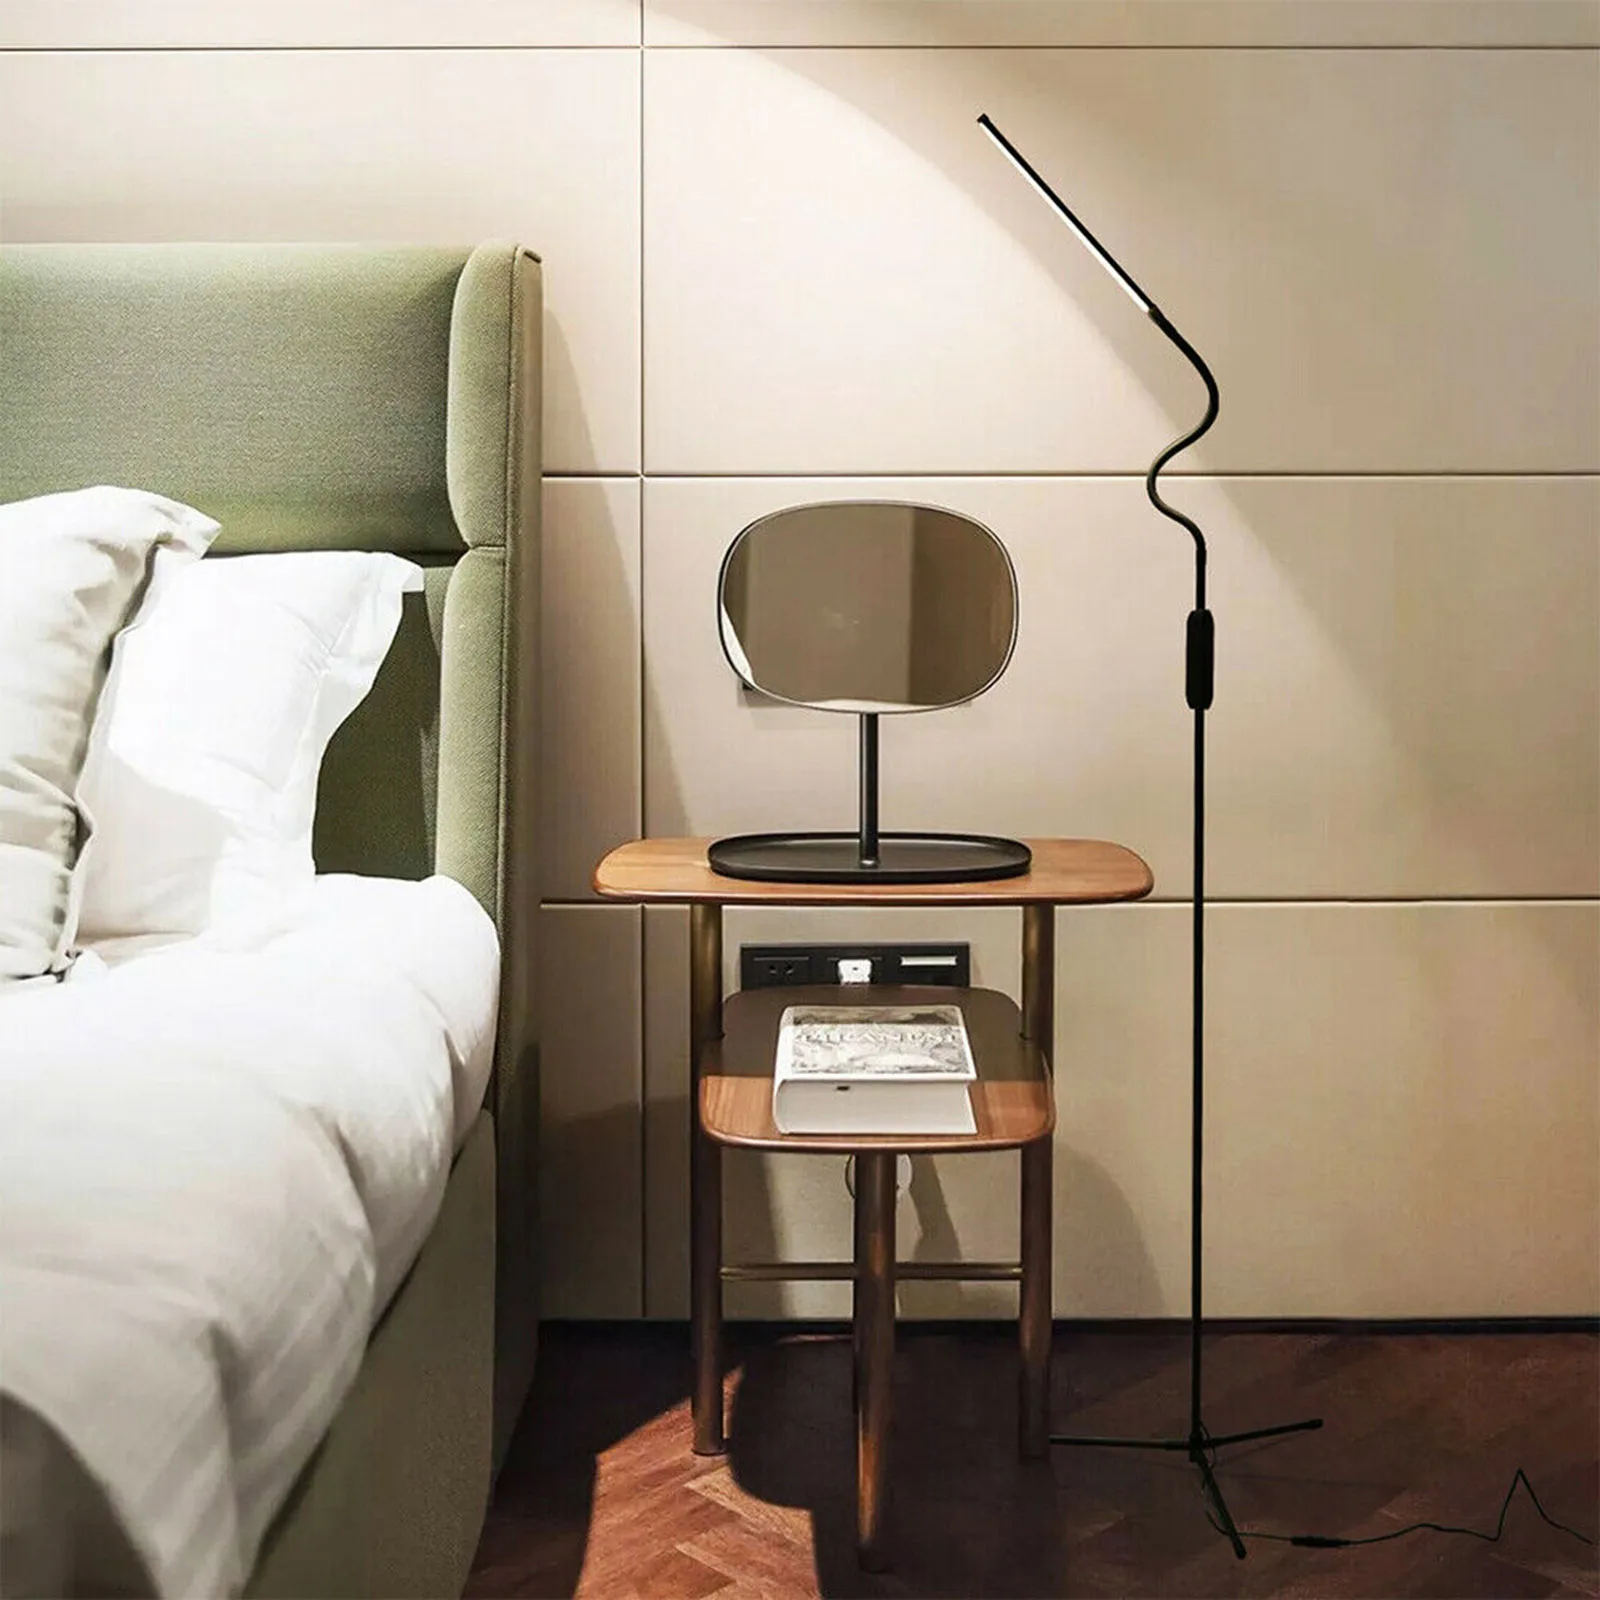 moderno led de pé lâmpada assoalho luz leitura para sala estar quarto lâmpada pé regulável luminária barra lâmpadas led quarto